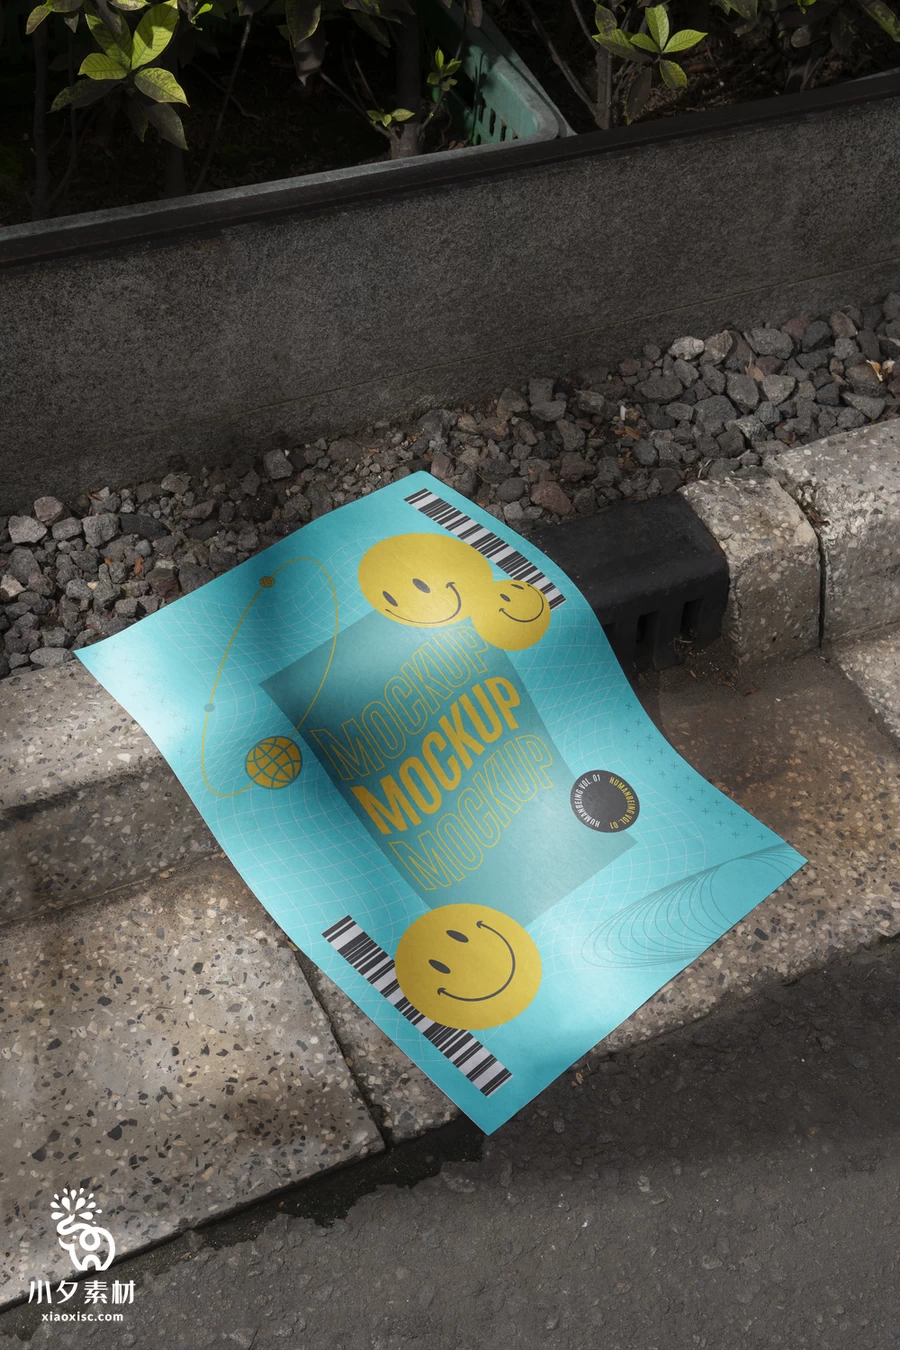 潮流街头混泥土艺术海报广告传单A4纸张vi展示PSD贴图设计样机【007】